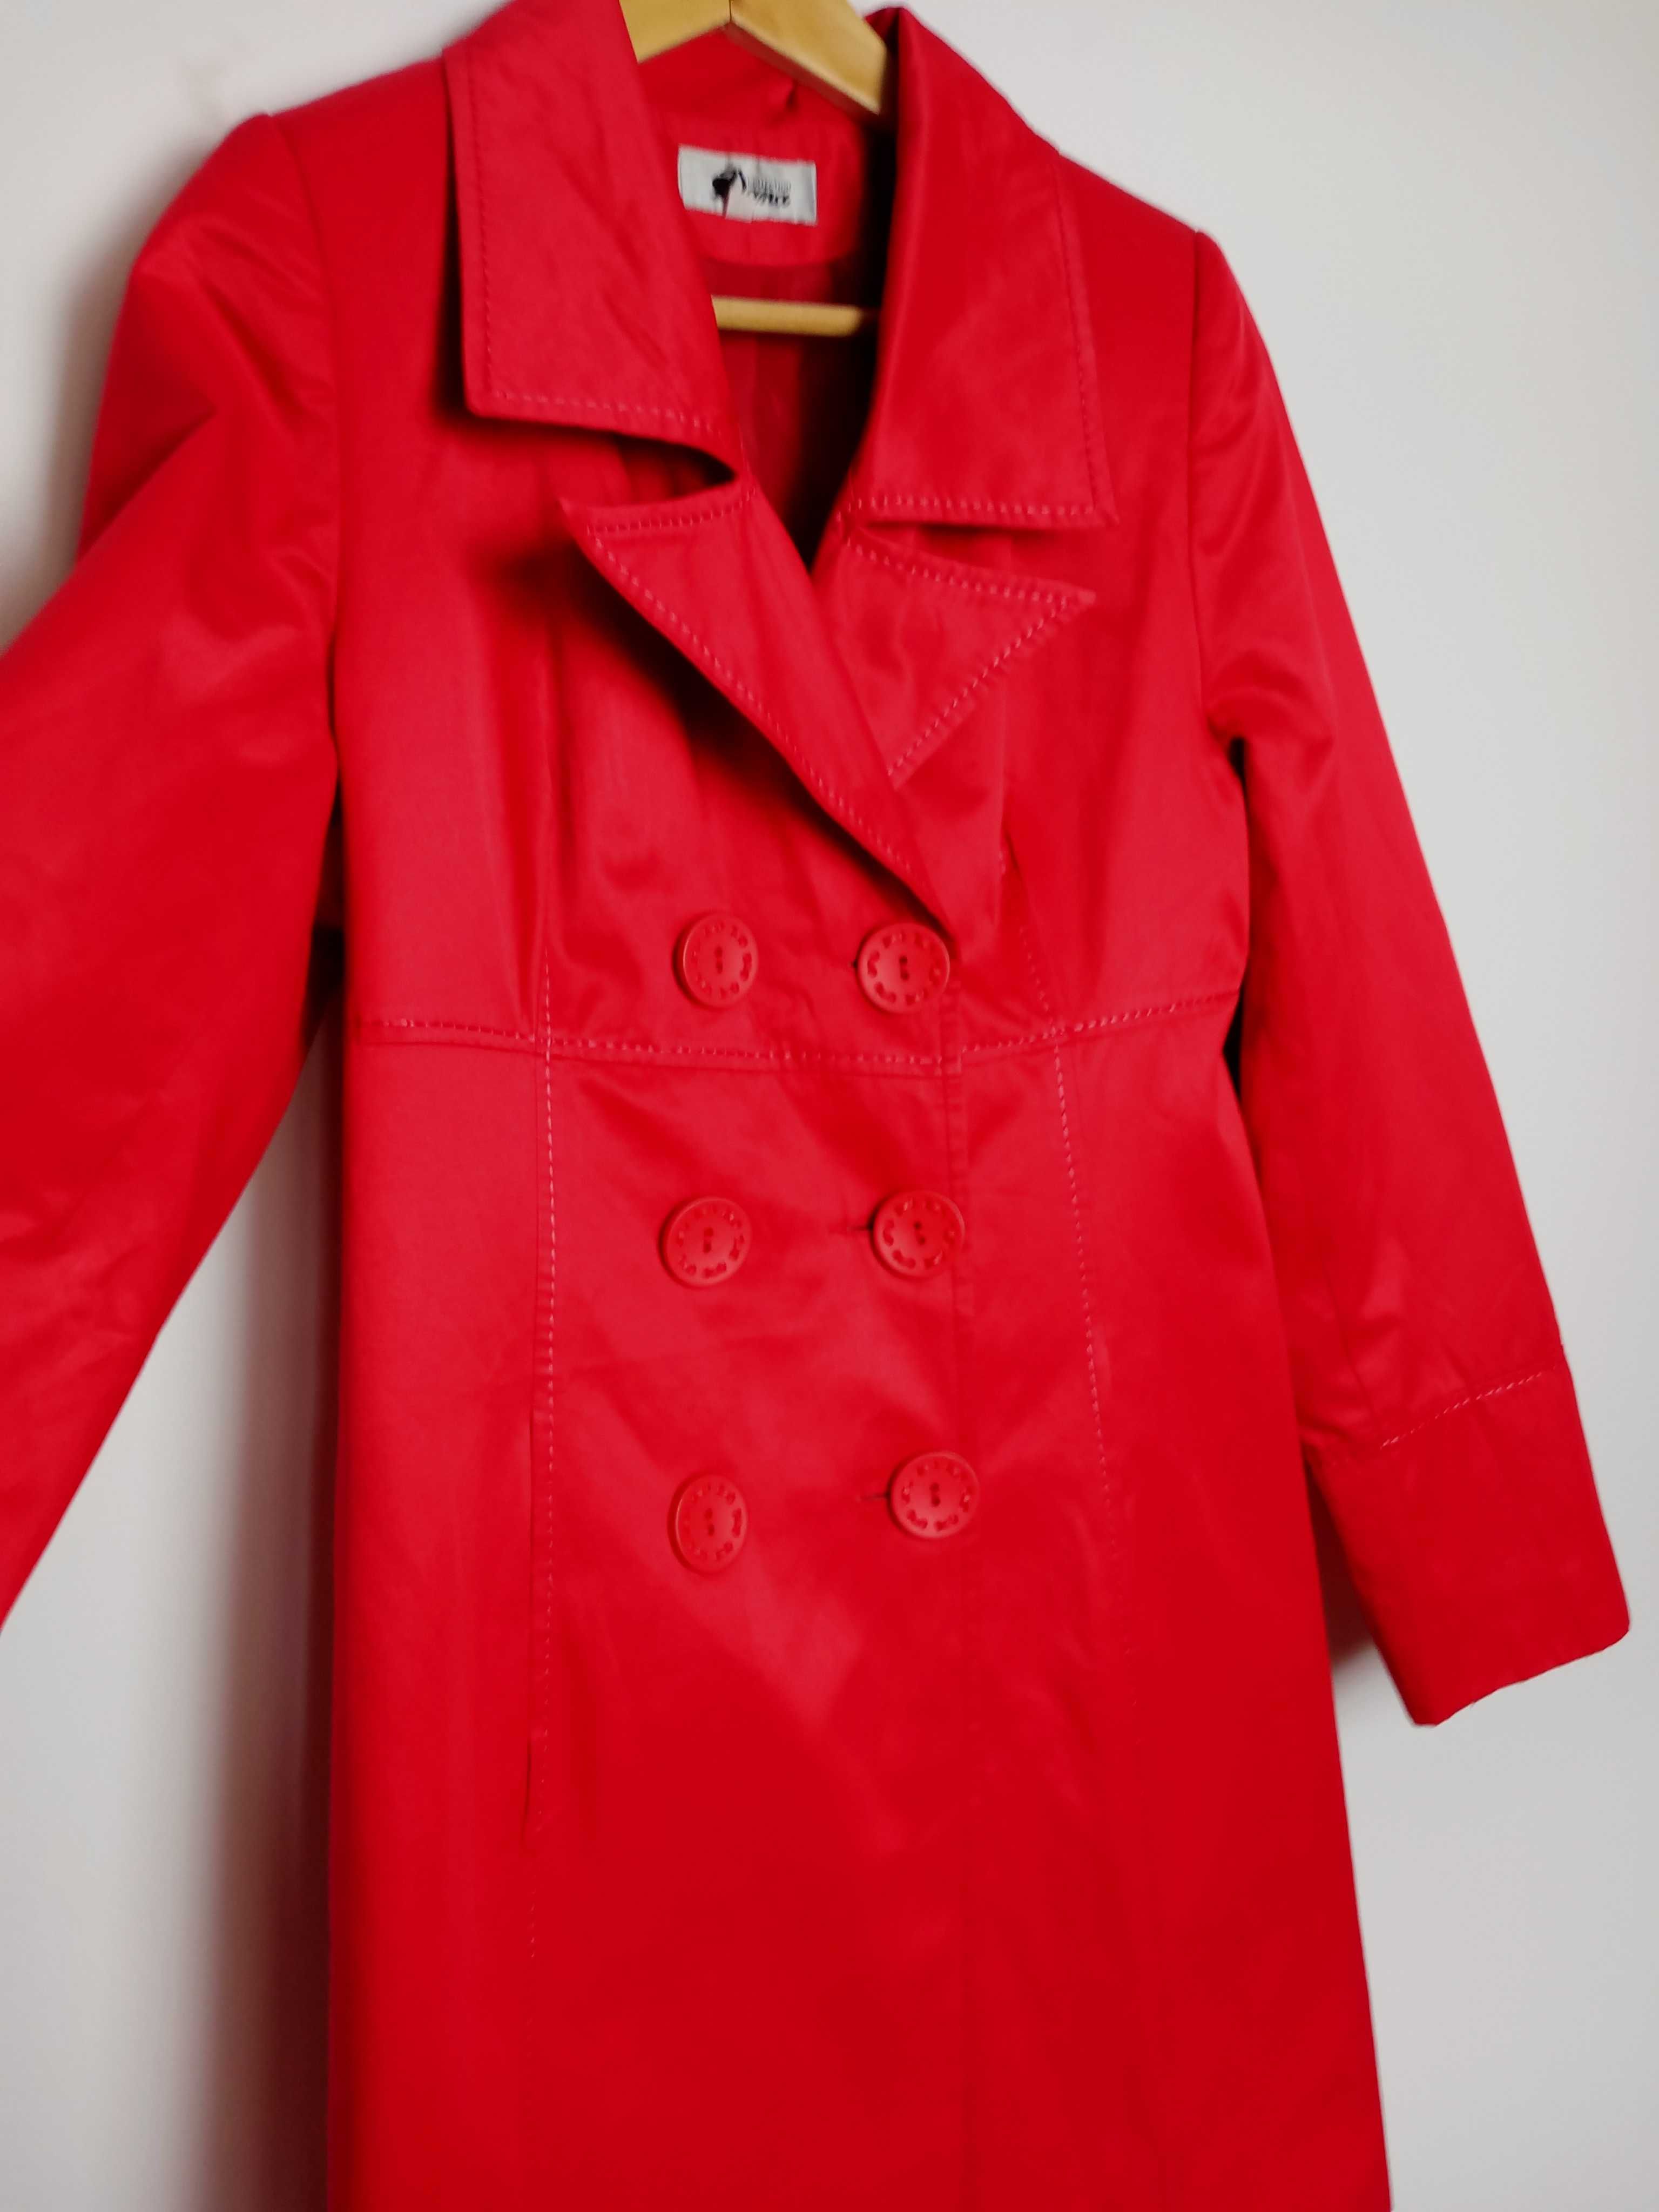 czerwony płaszcz damski wiosenny Dana Collection 40 L